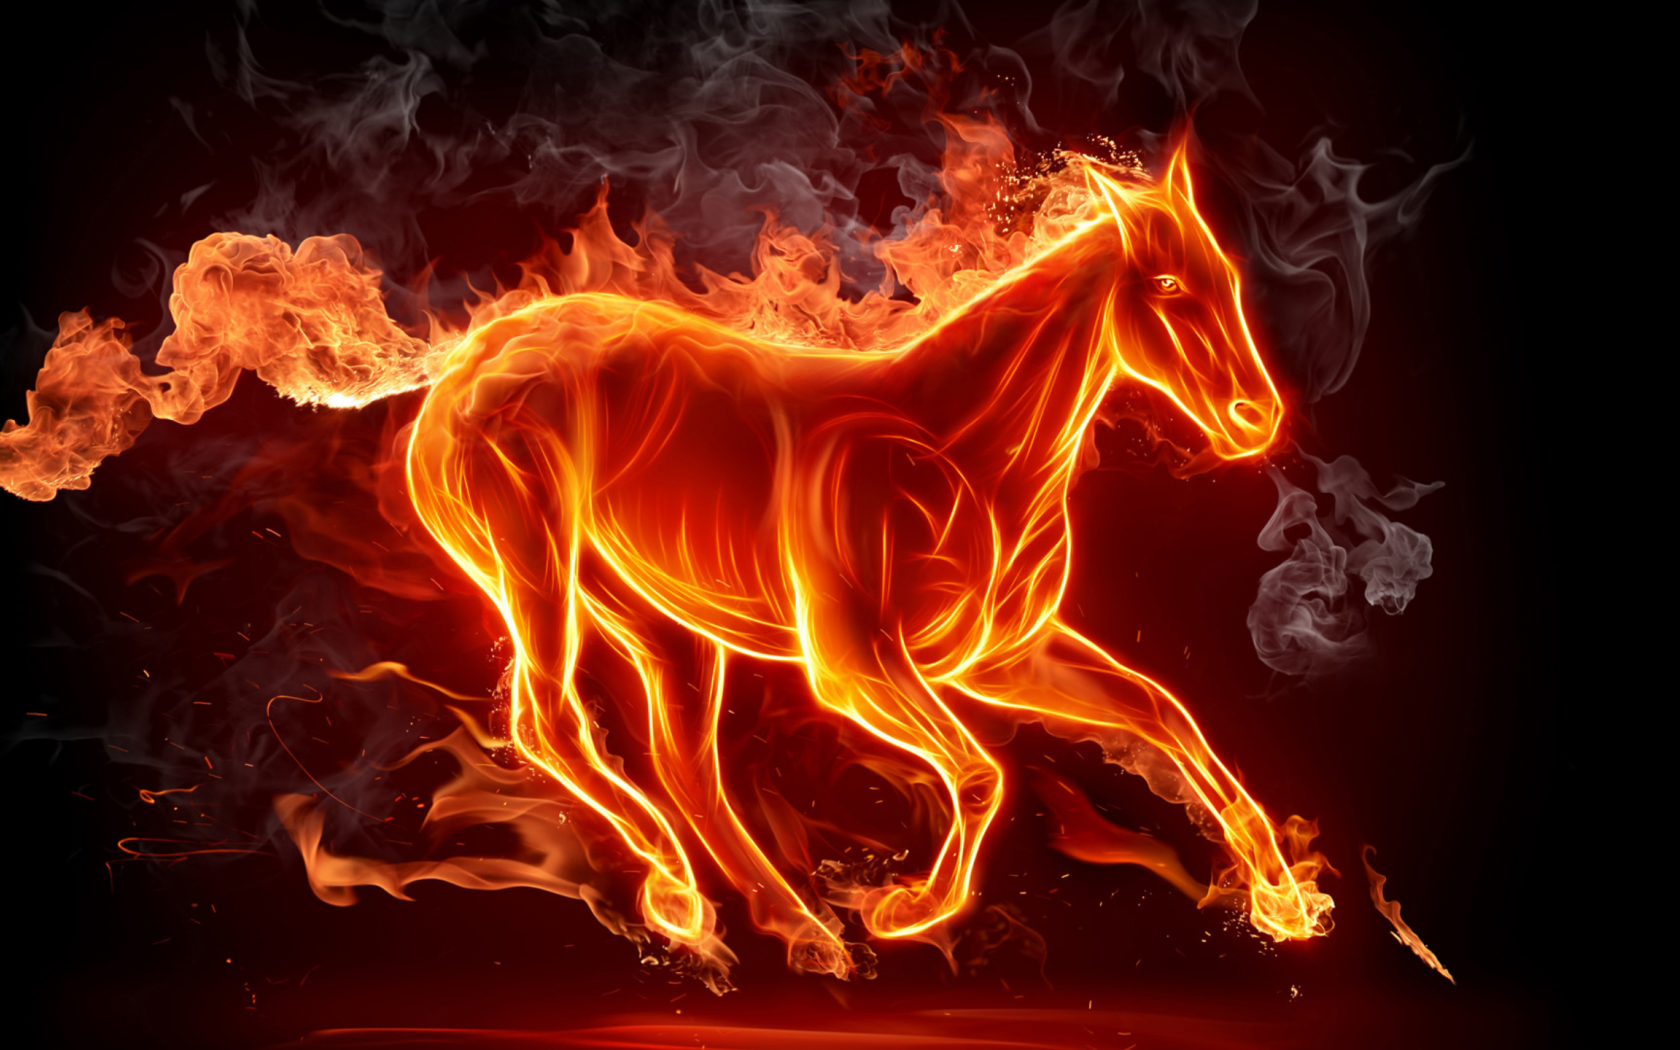 лошадь, пламя